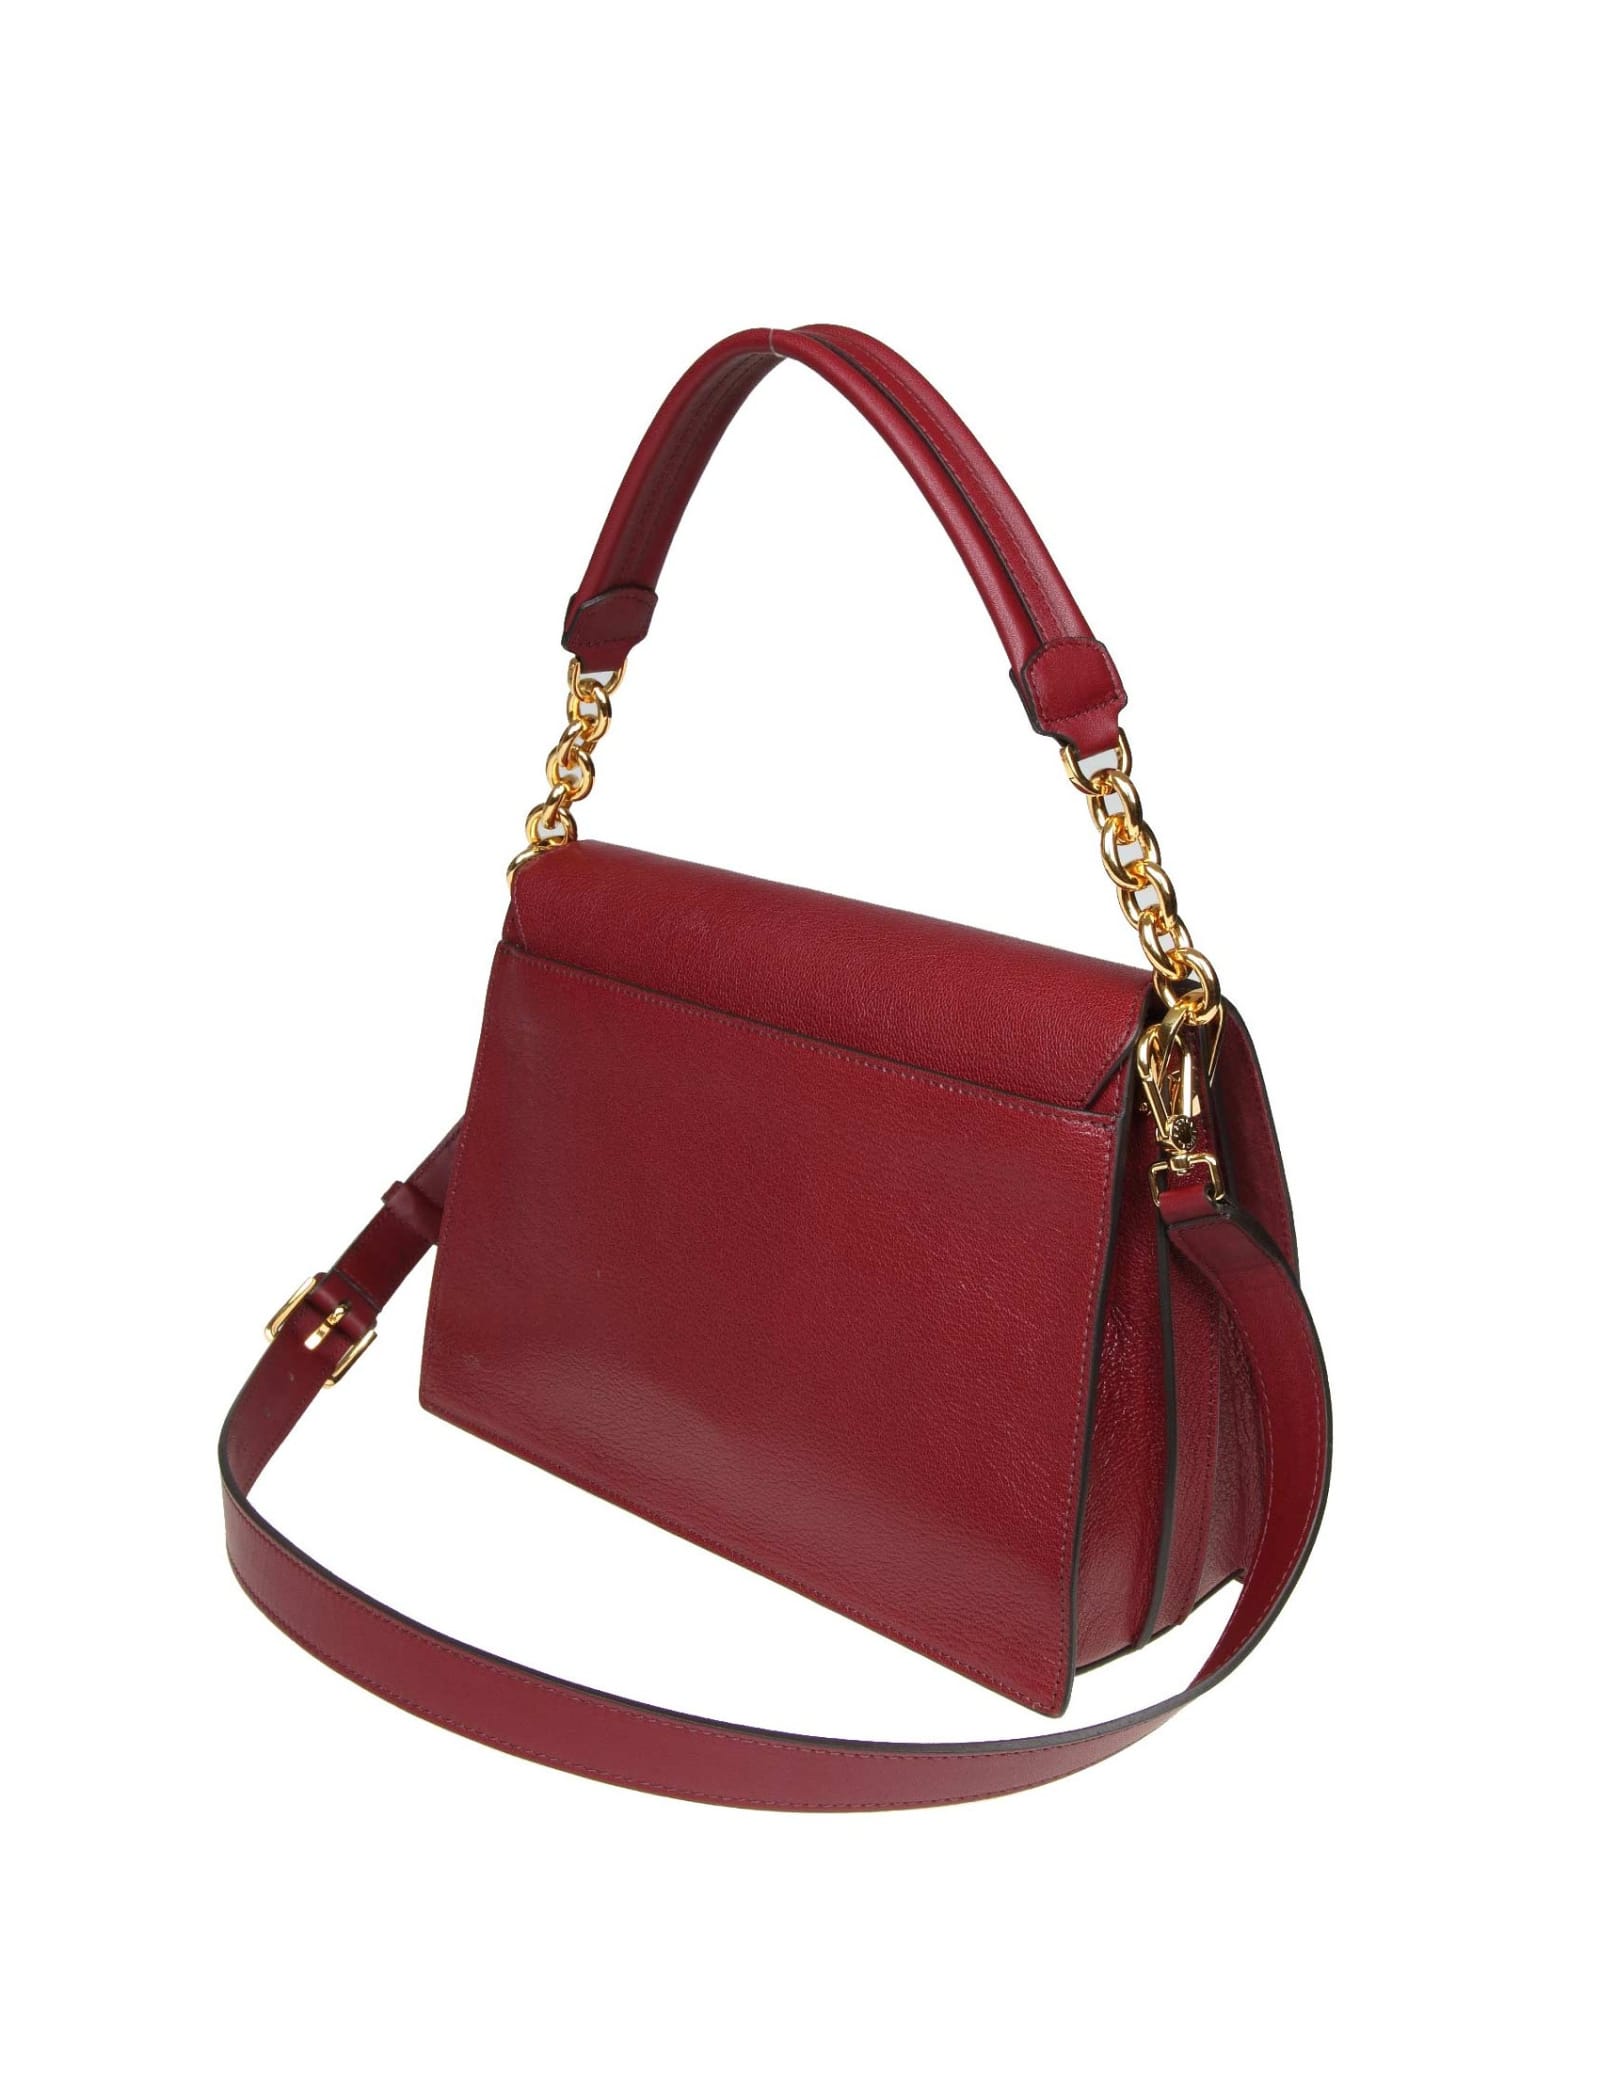 Furla Furla Diva M Shoulder Bag In Cherry Color Leather - 10999587 ...